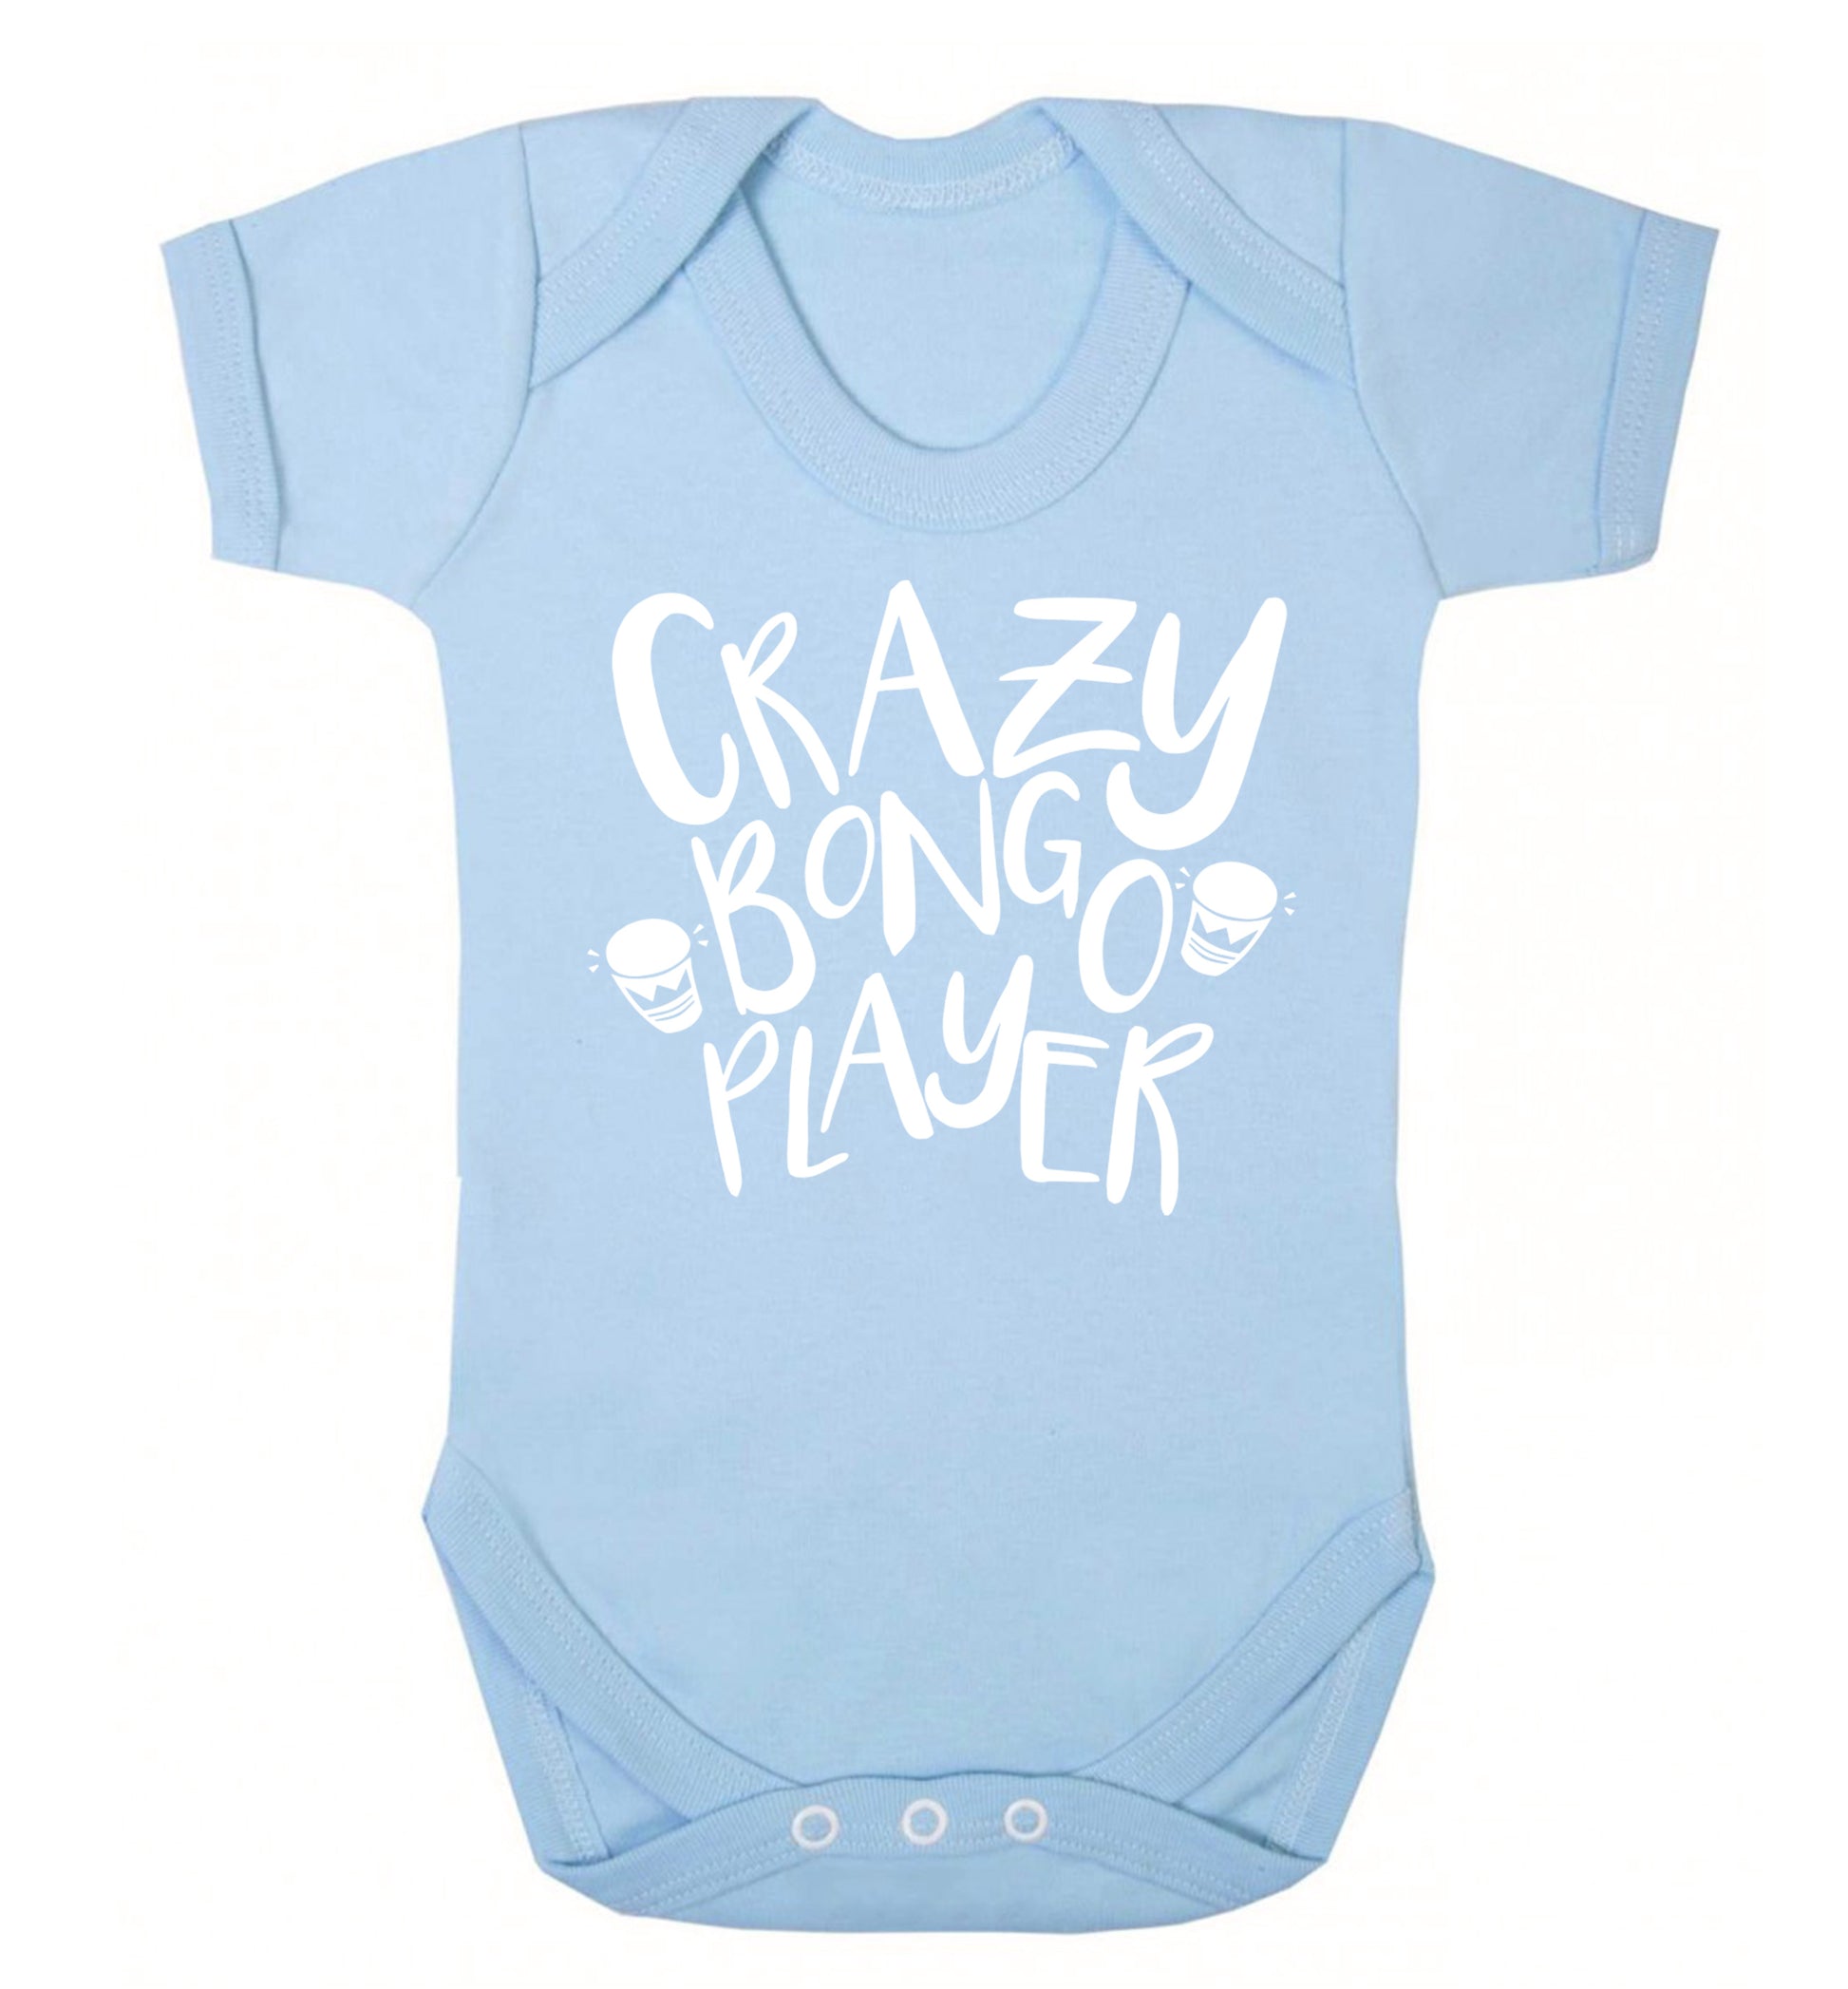 Crazy bongo player Baby Vest pale blue 18-24 months